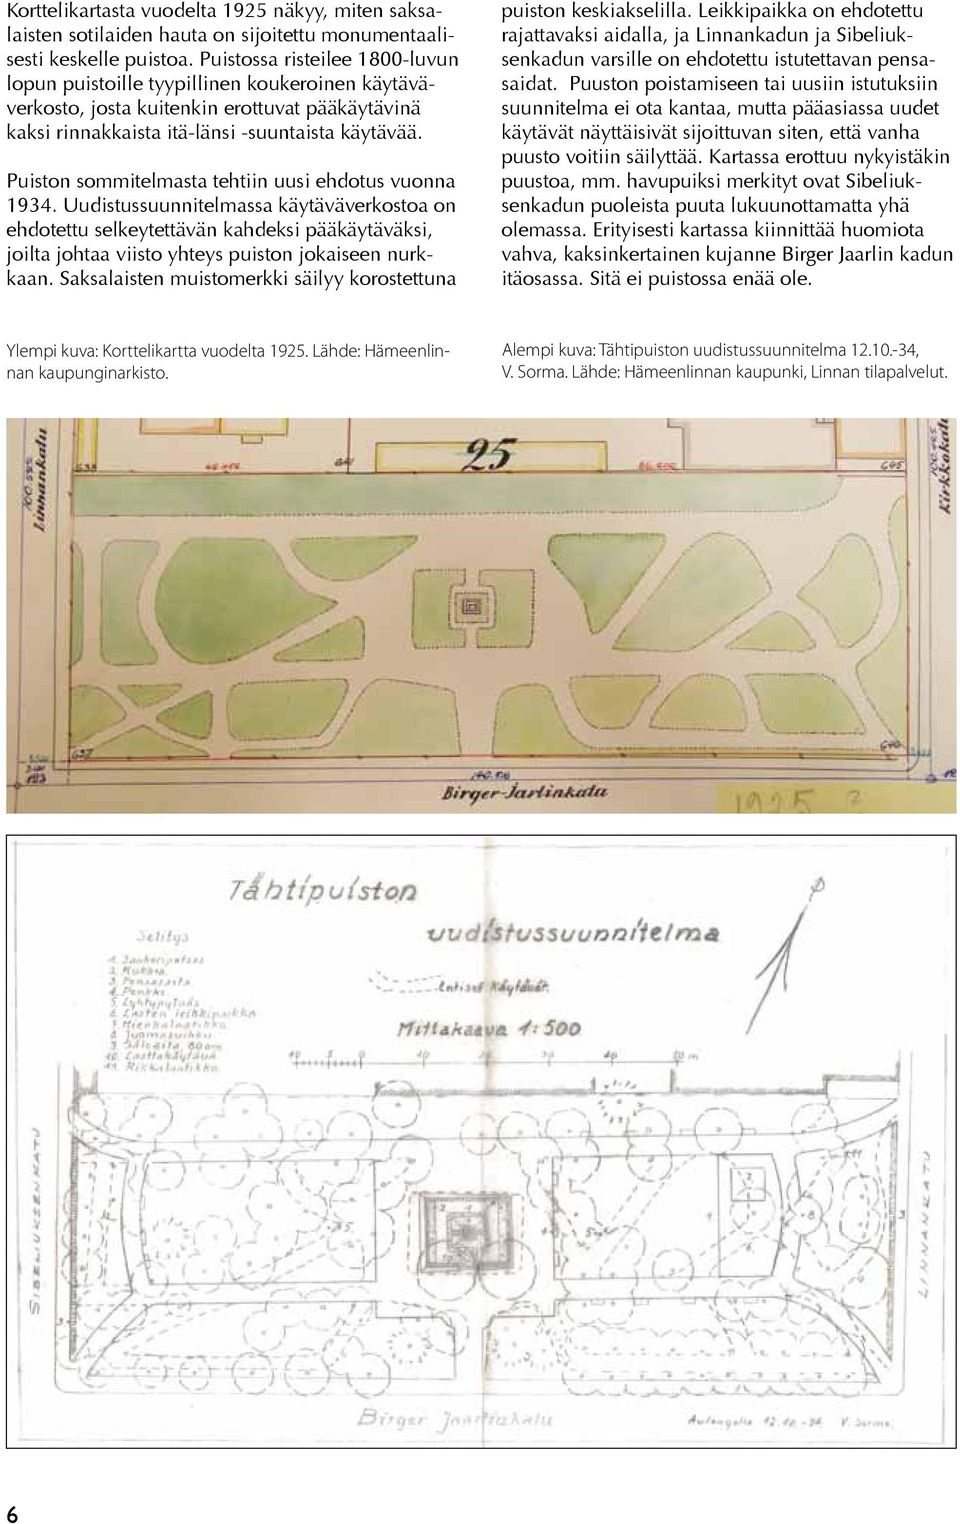 Puiston sommitelmasta tehtiin uusi ehdotus vuonna 1934.